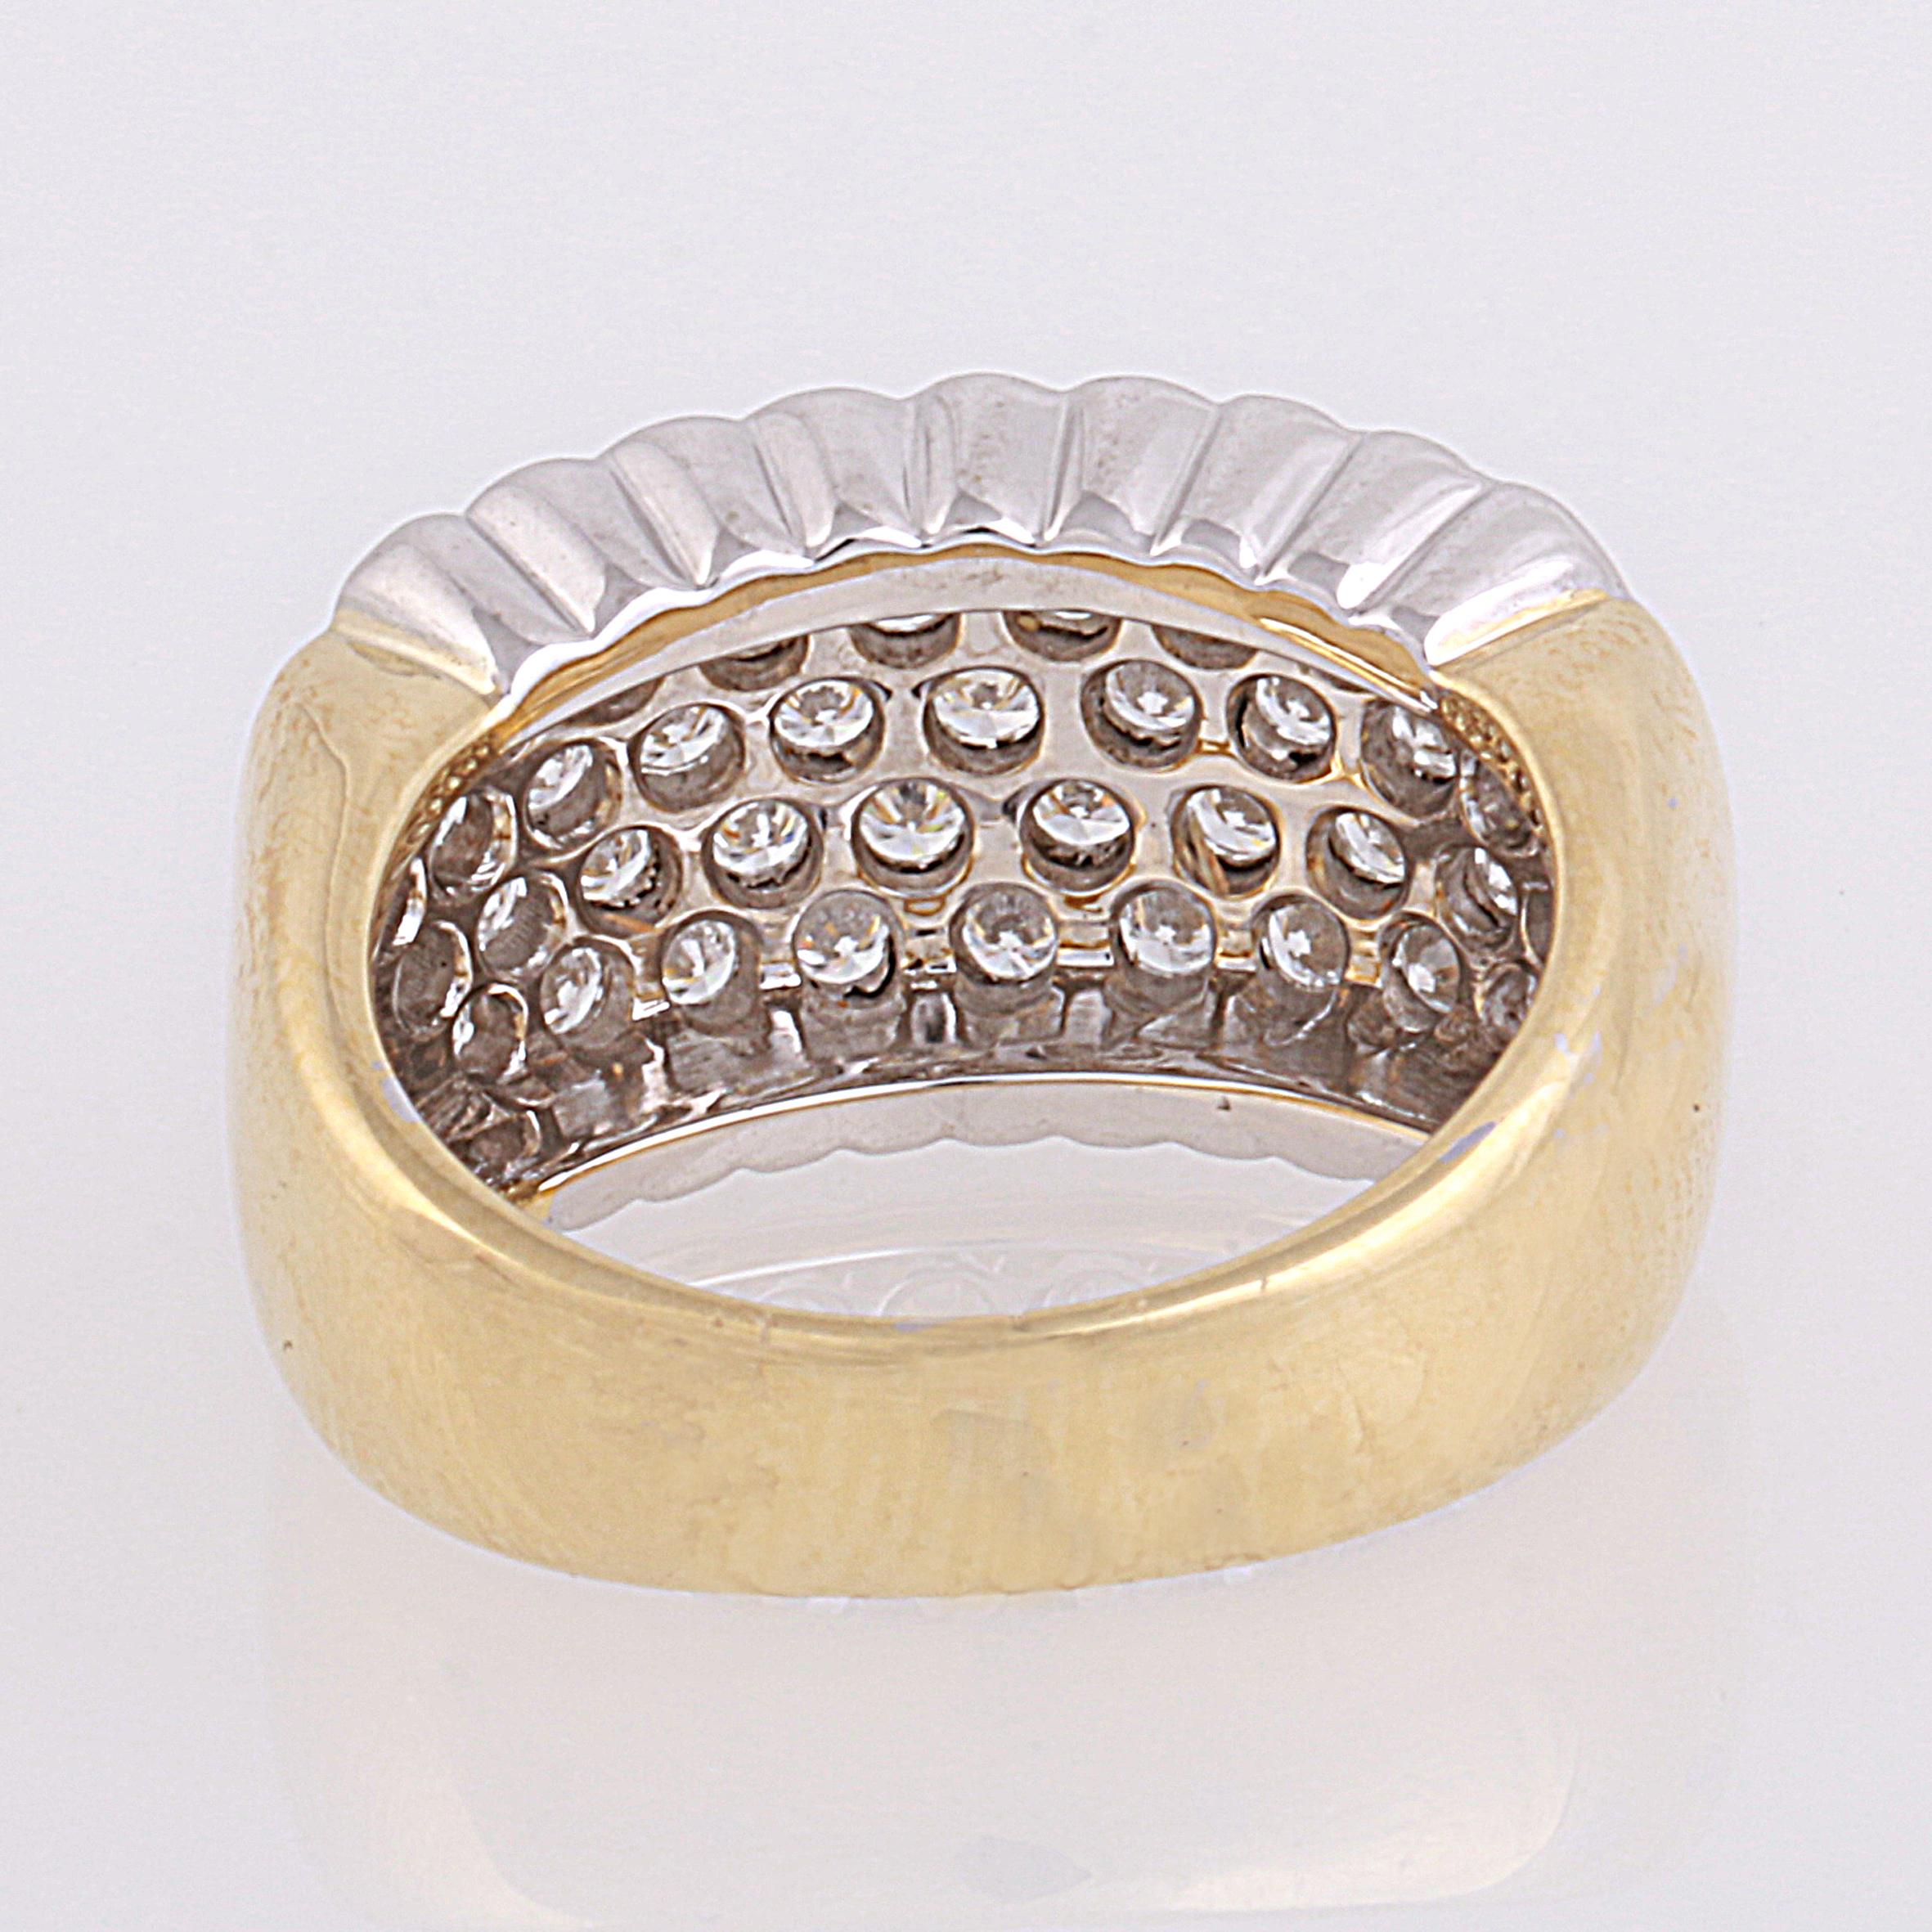 Women's or Men's 0.70 Carat Pavé Set Diamond Band Ring in 18 Karat Yellow and White Gold